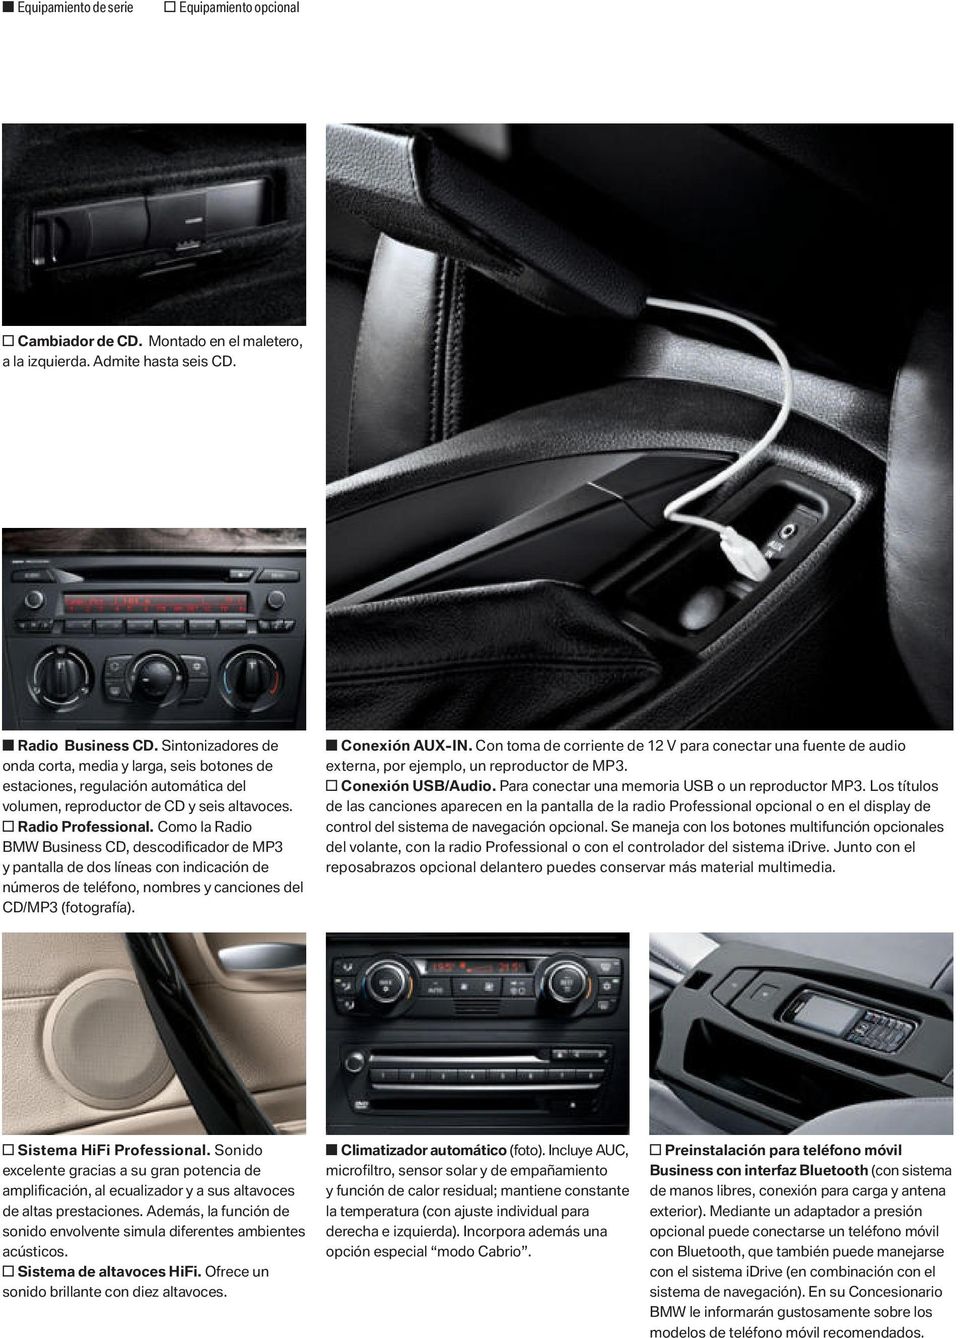 Como la Radio BMW Business CD, descodificador de MP3 y pantalla de dos líneas con indicación de números de teléfono, nombres y canciones del CD/MP3 (fotografía). s Conexión AUX-IN.